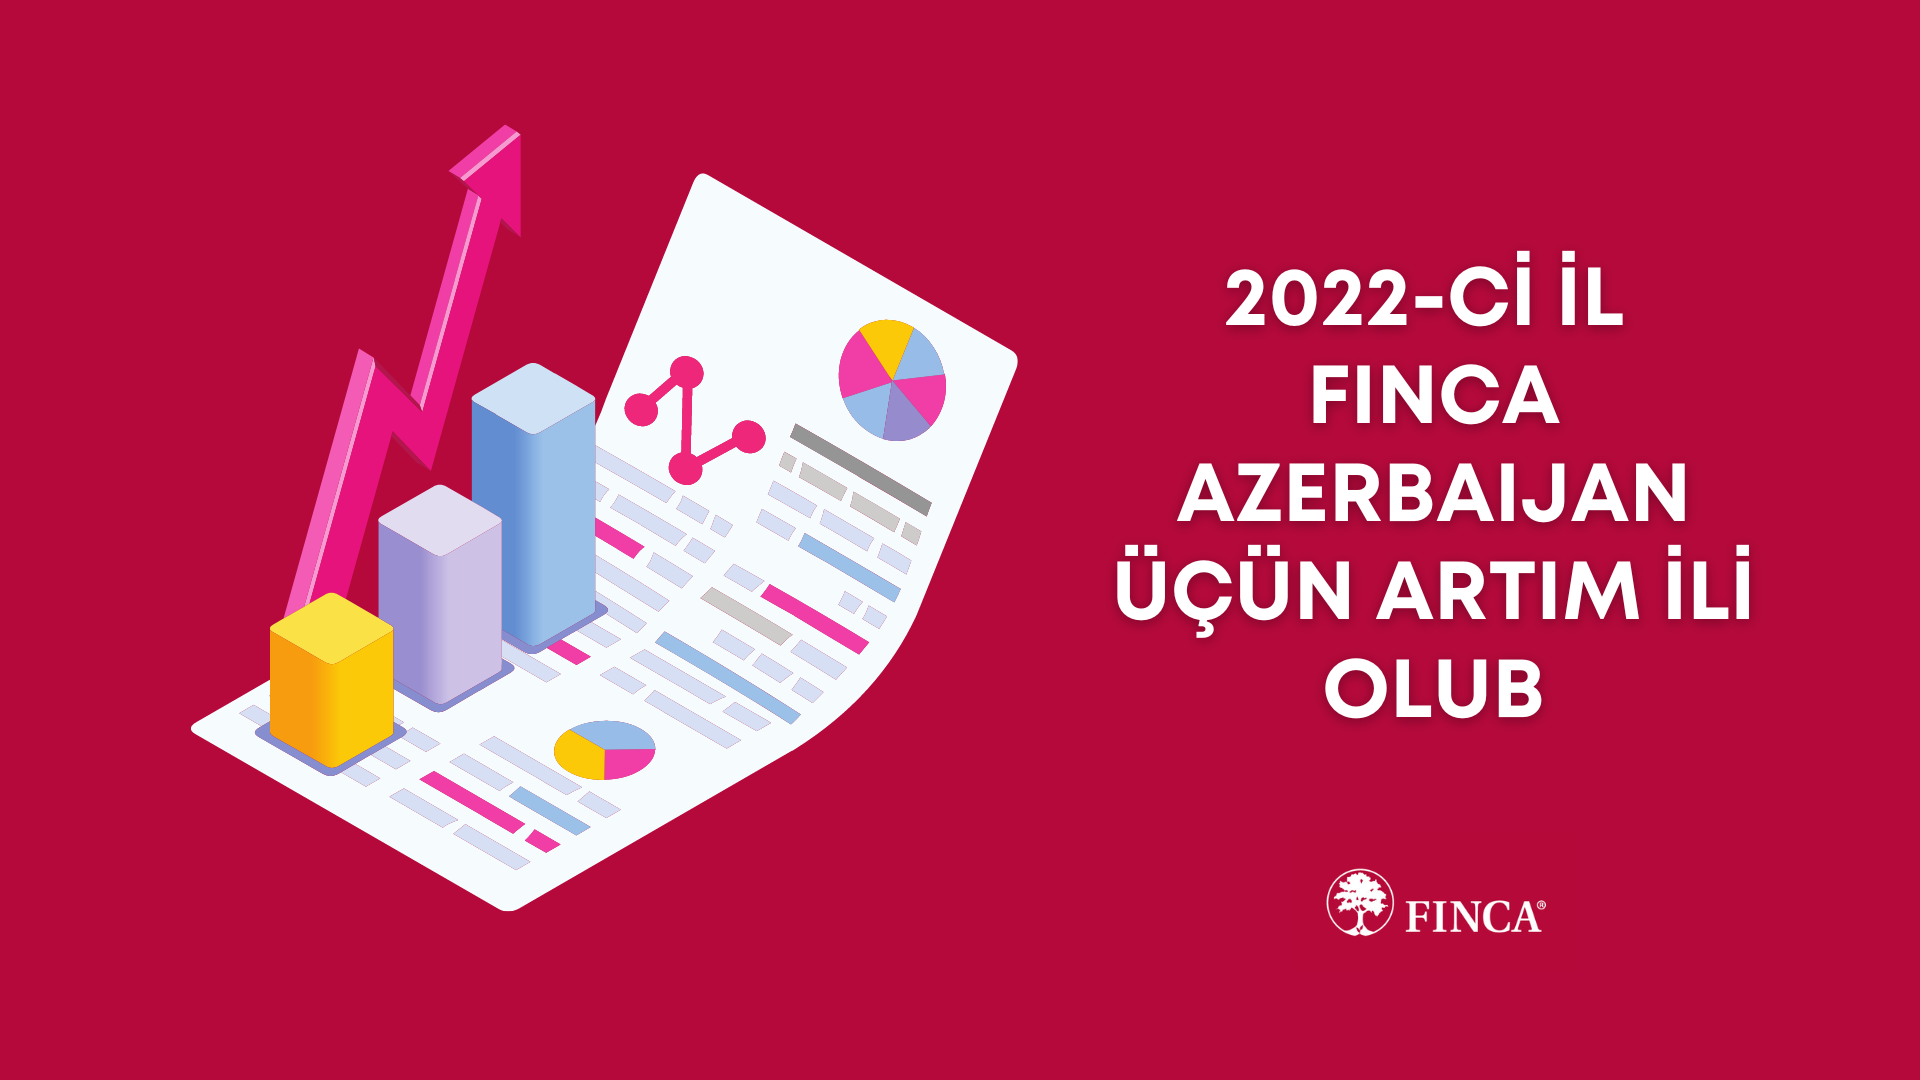 2022-ci il FINCA Azerbaijan üçün artım ili olub